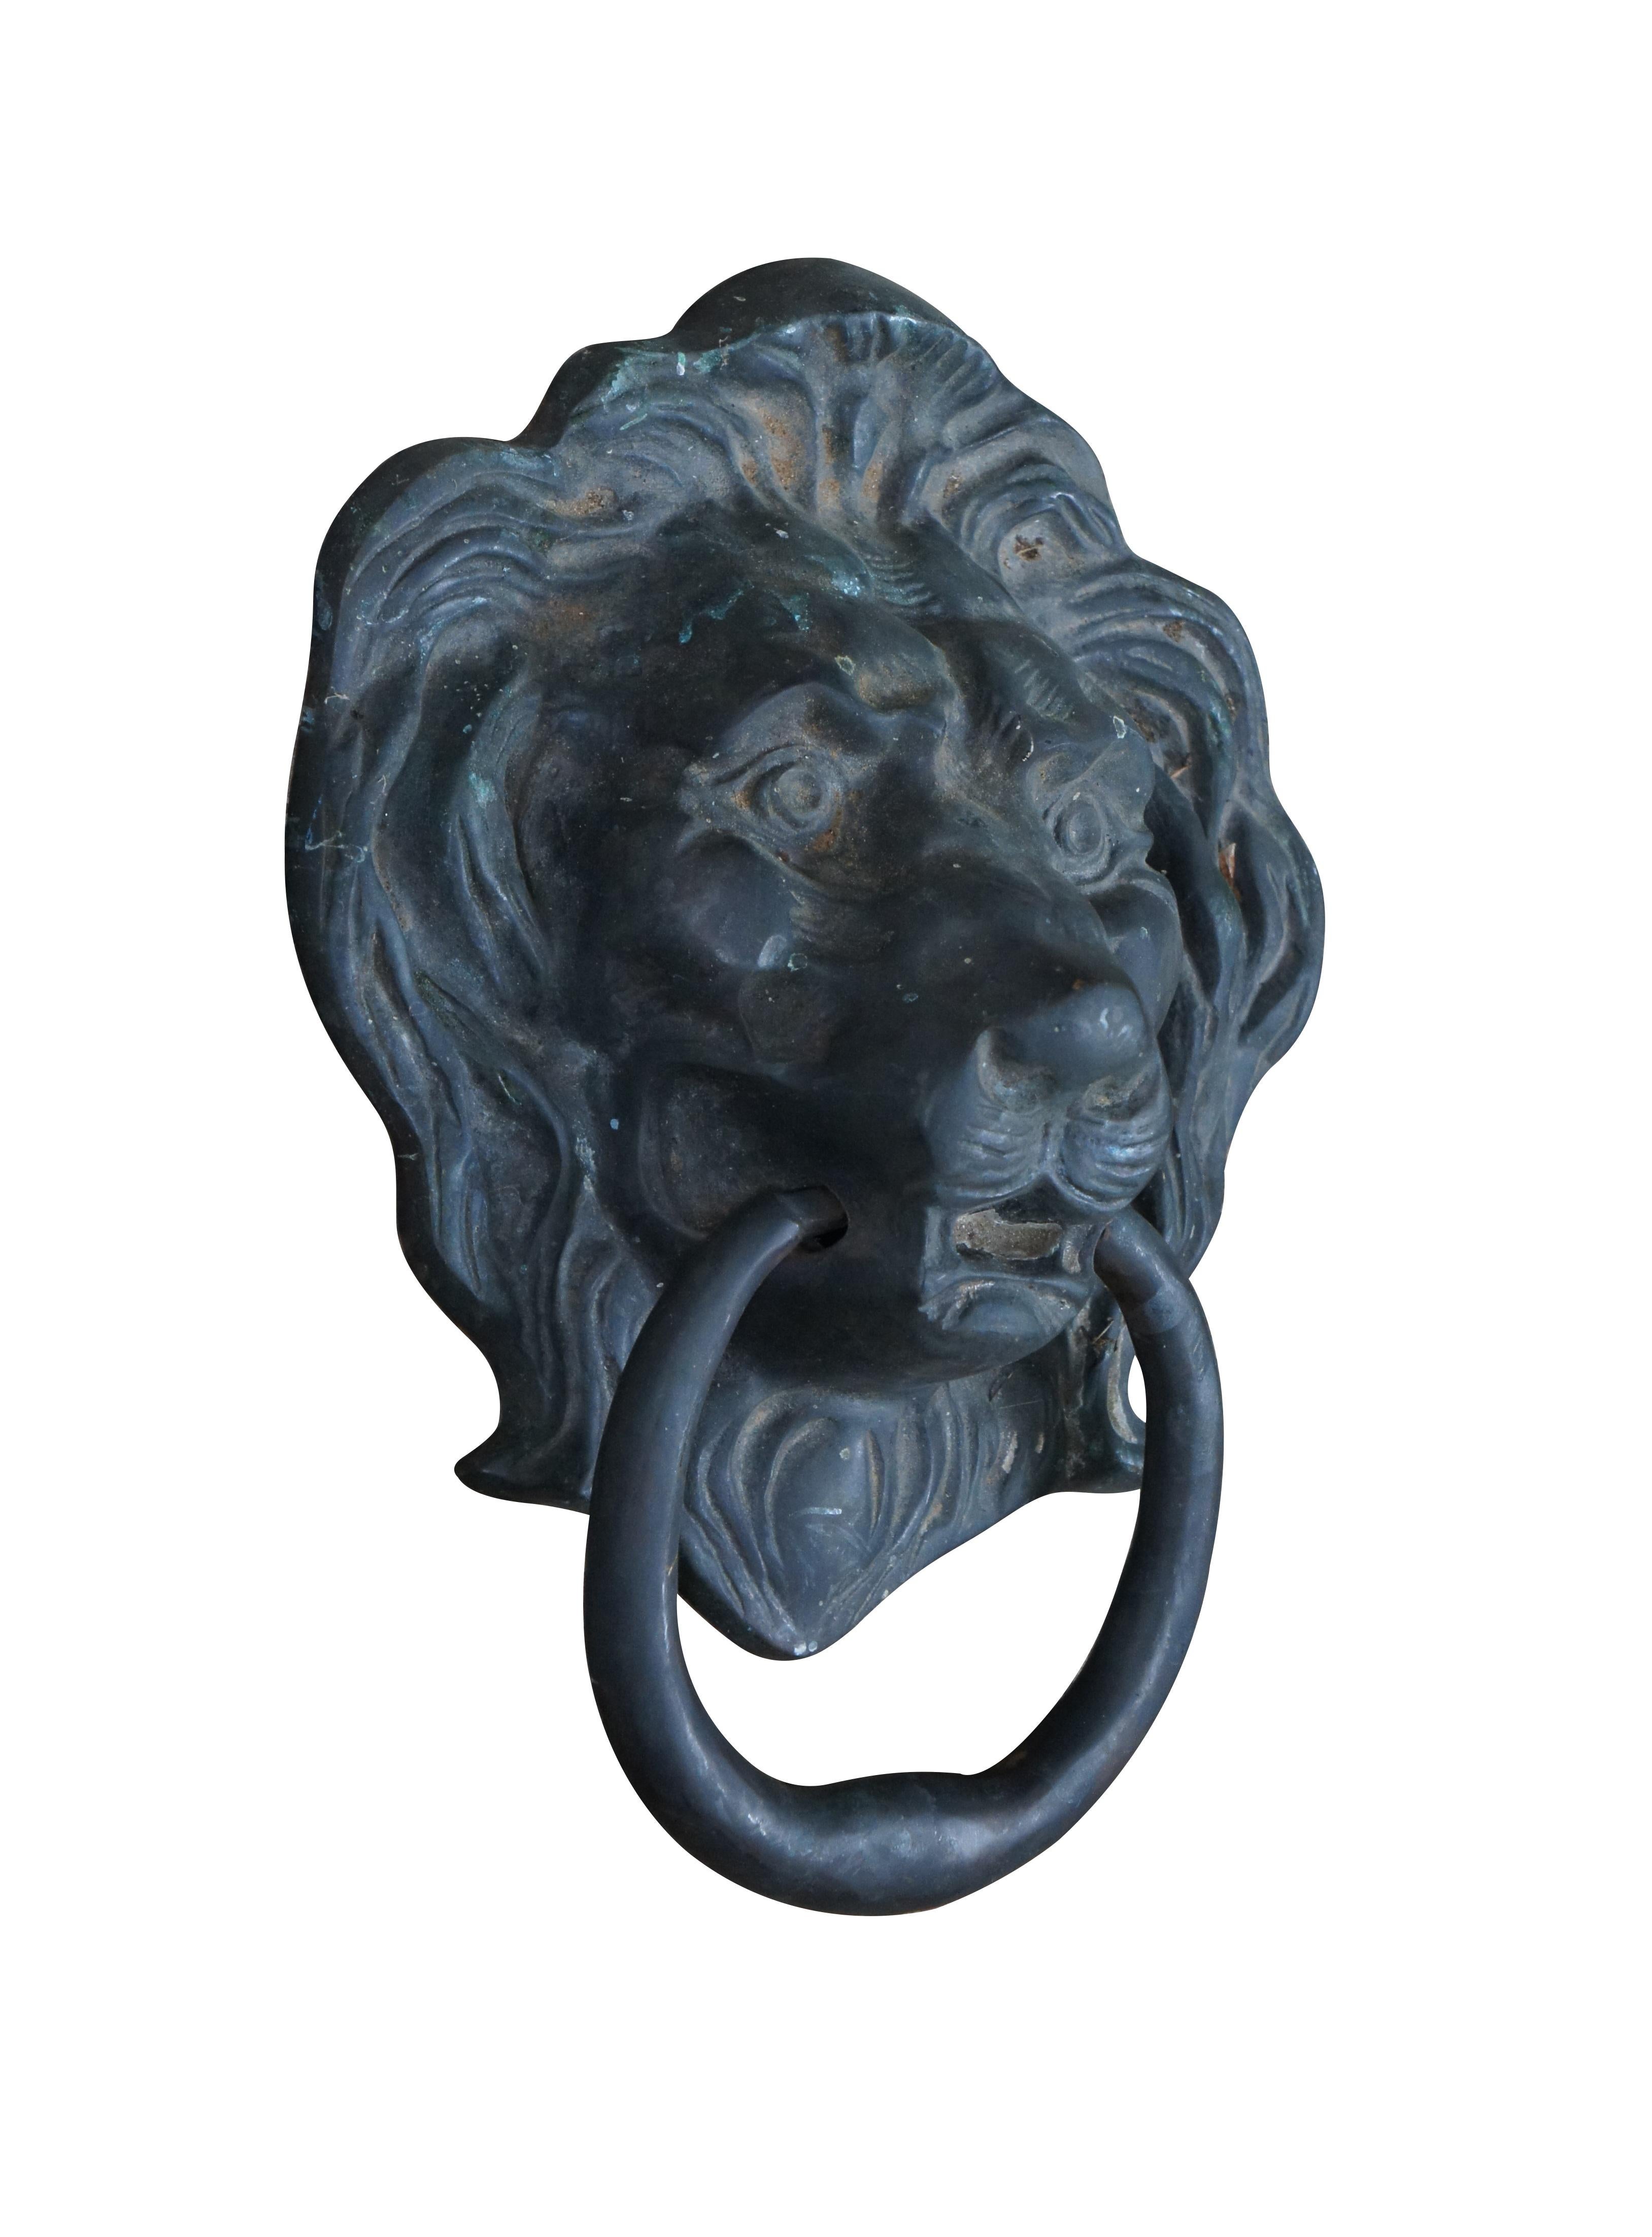 Antiker georgianischer Türklopfer aus massivem Messing in der traditionellen Form eines Löwenkopfes mit einem Ring im Maul. 

Abmessungen:
8